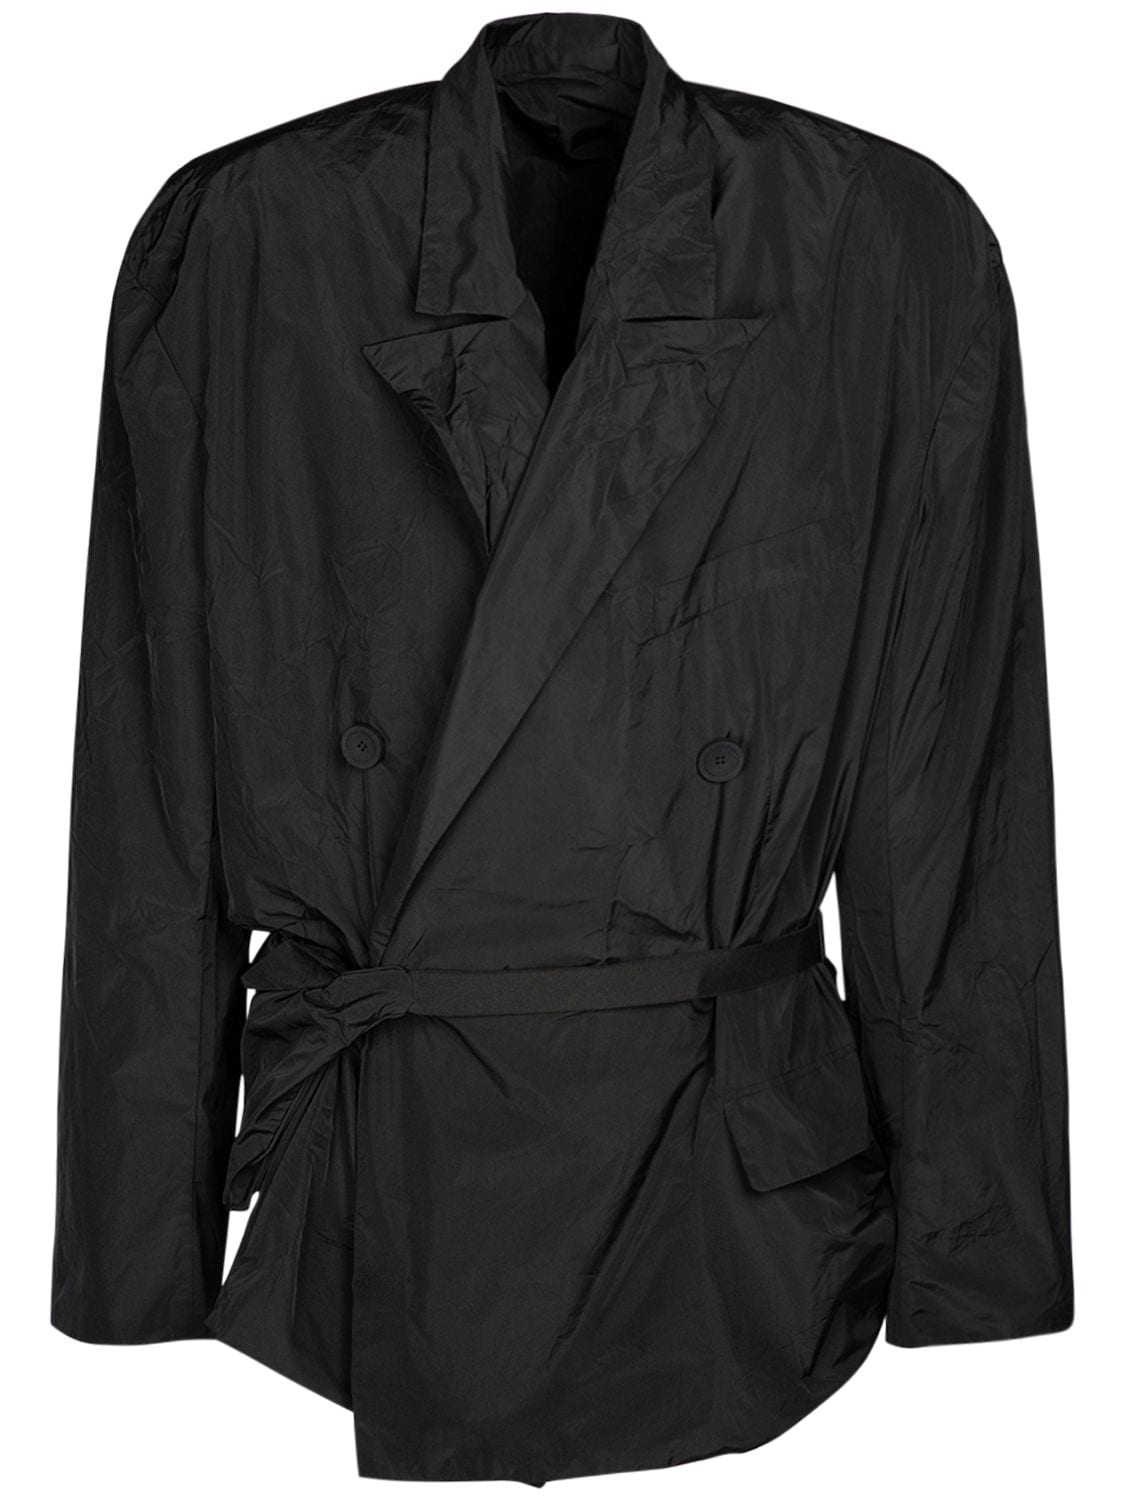 Image of Nylon Jacket